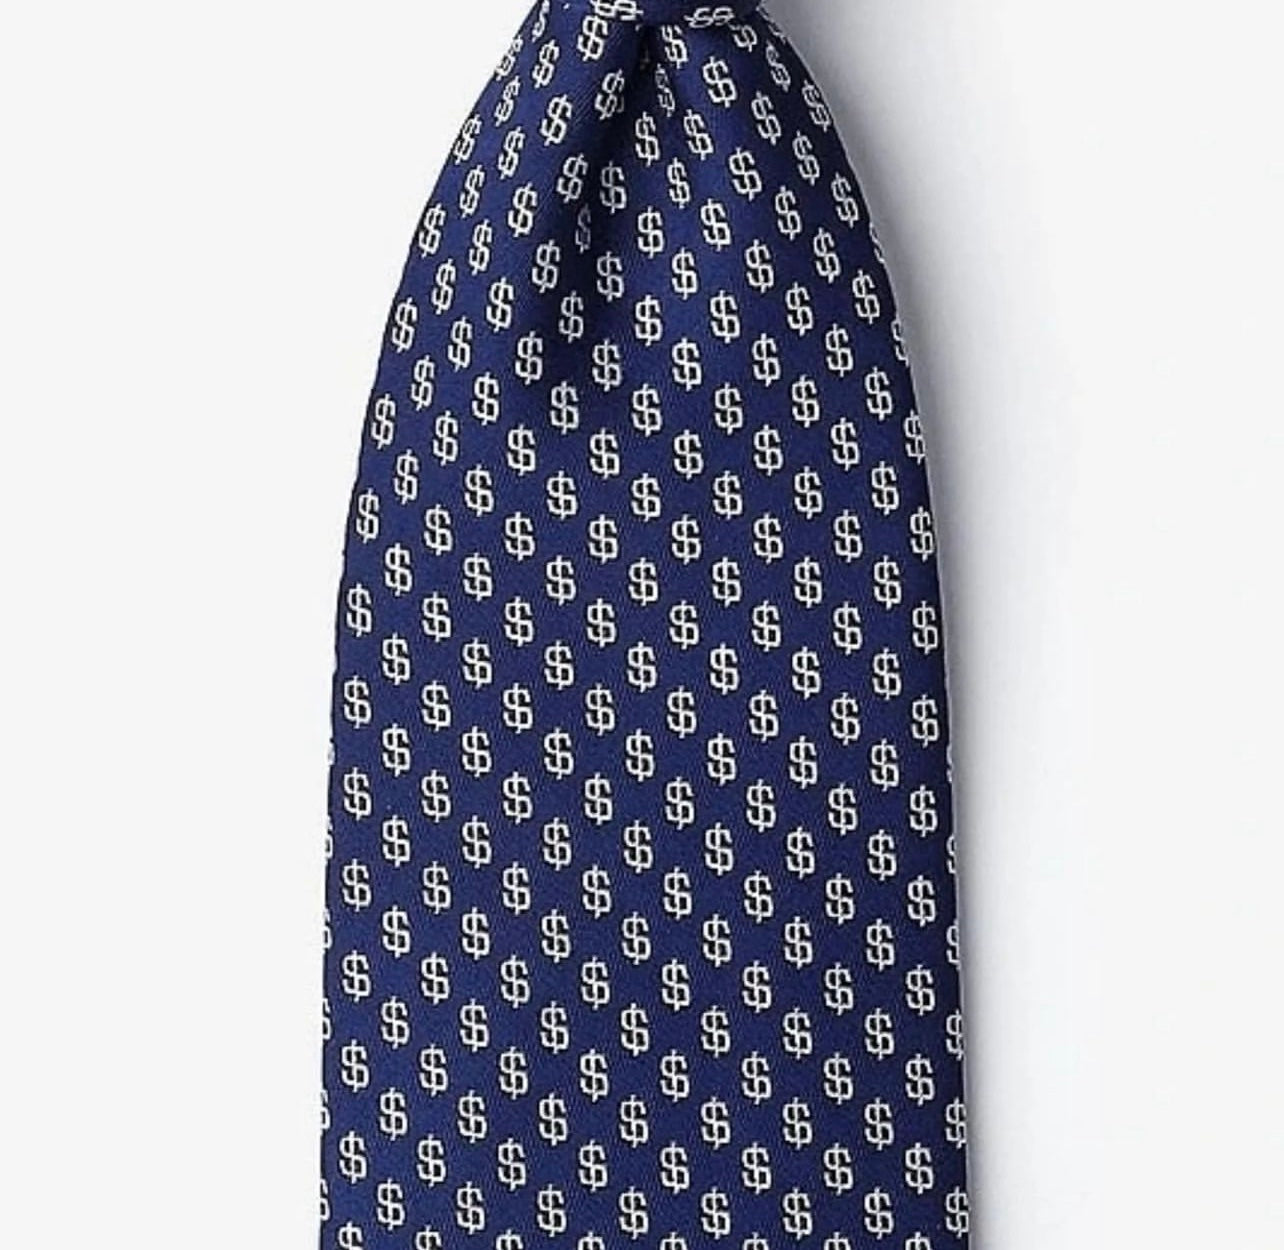 The Dollar Blue Necktie